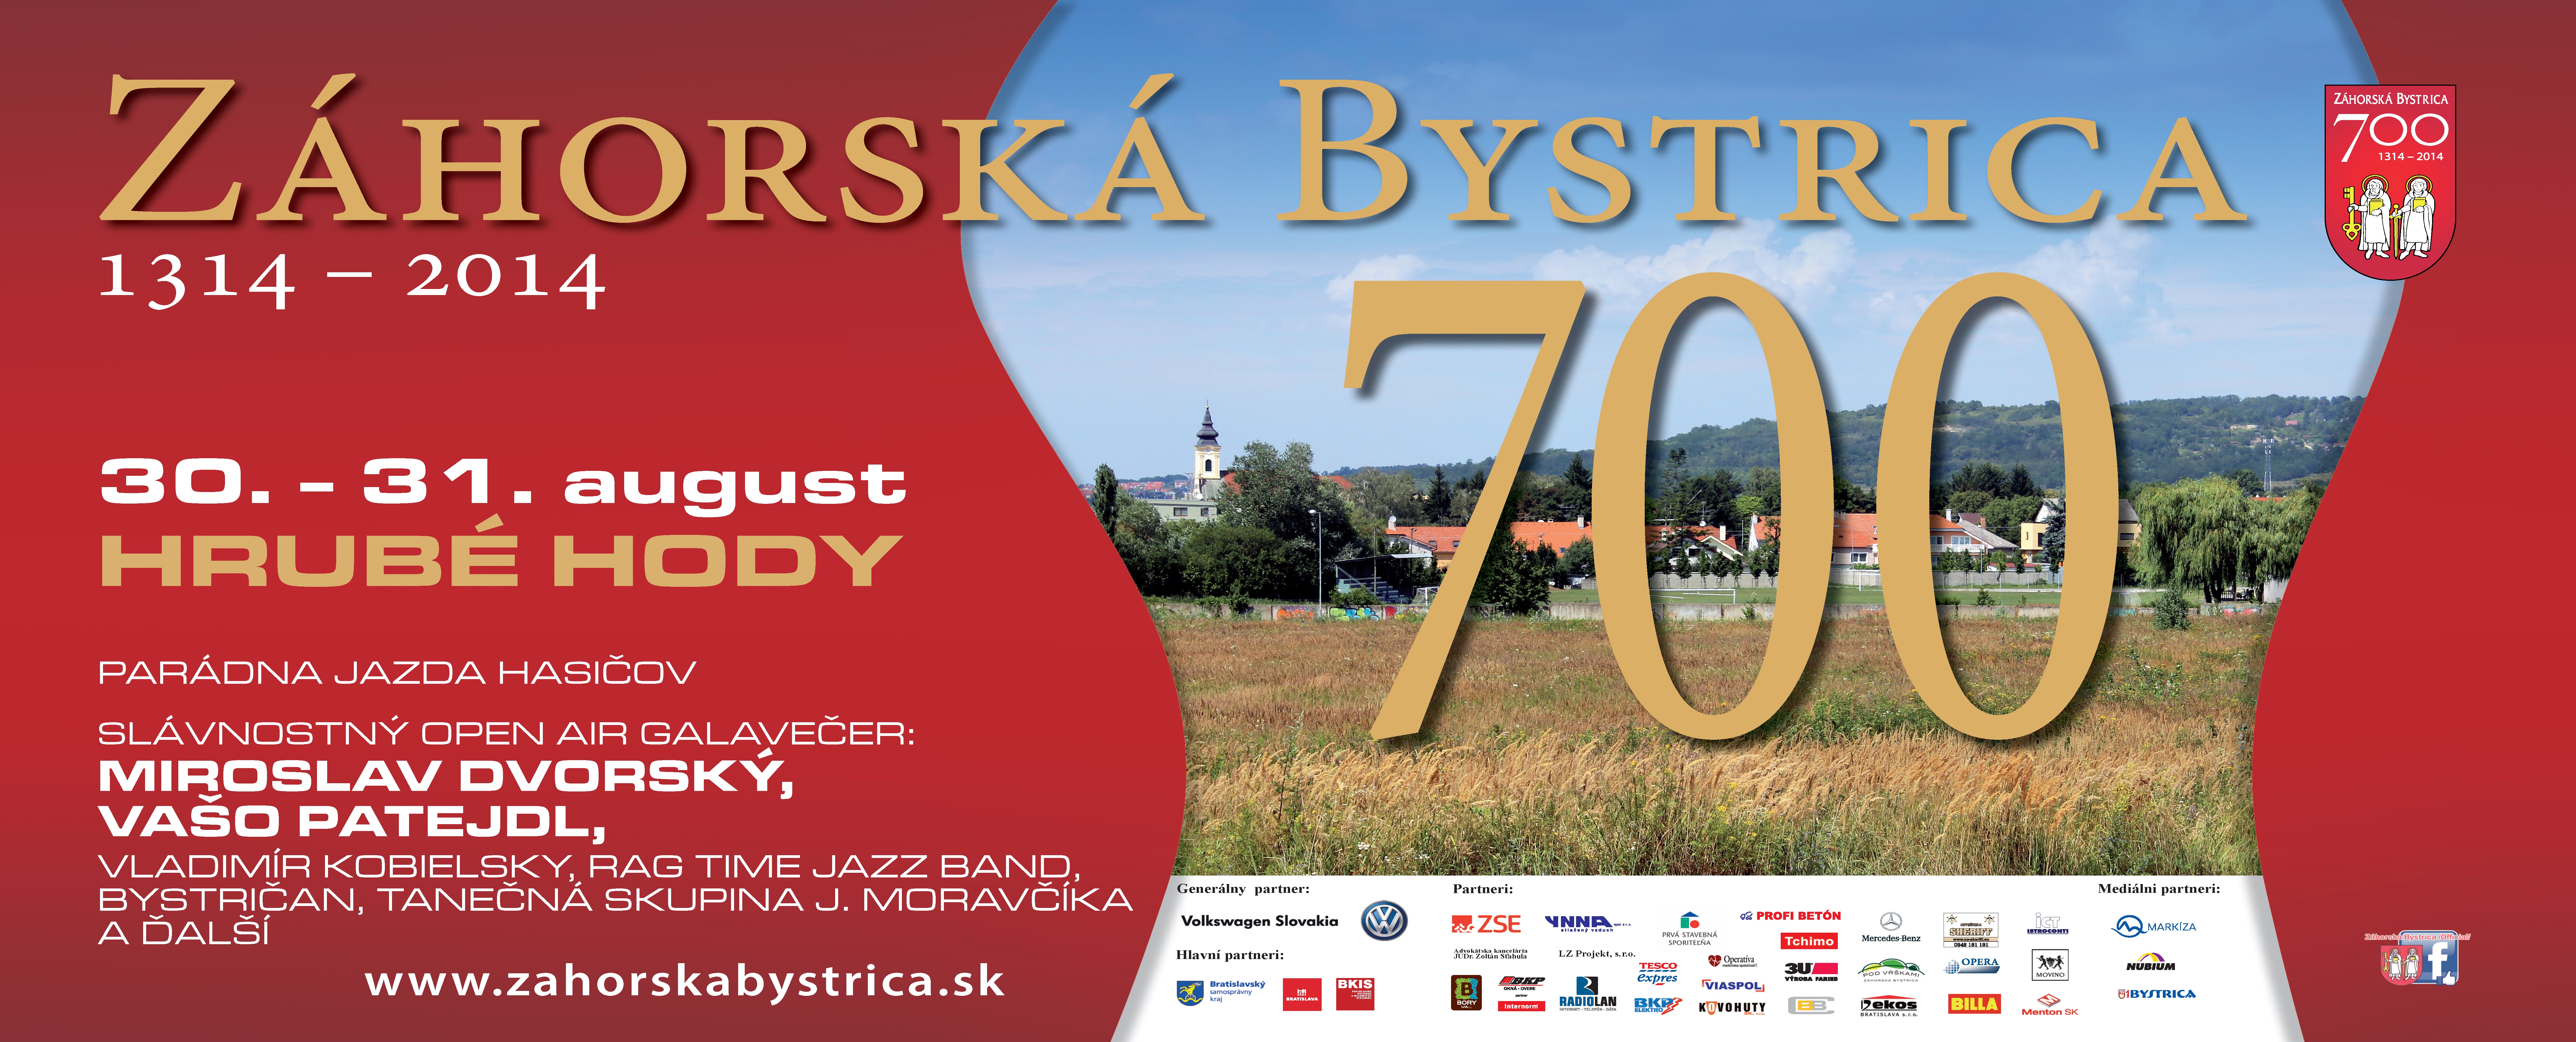 Hrub hody 2014 - oslavy 700. vroia Zhorskej Bystrice